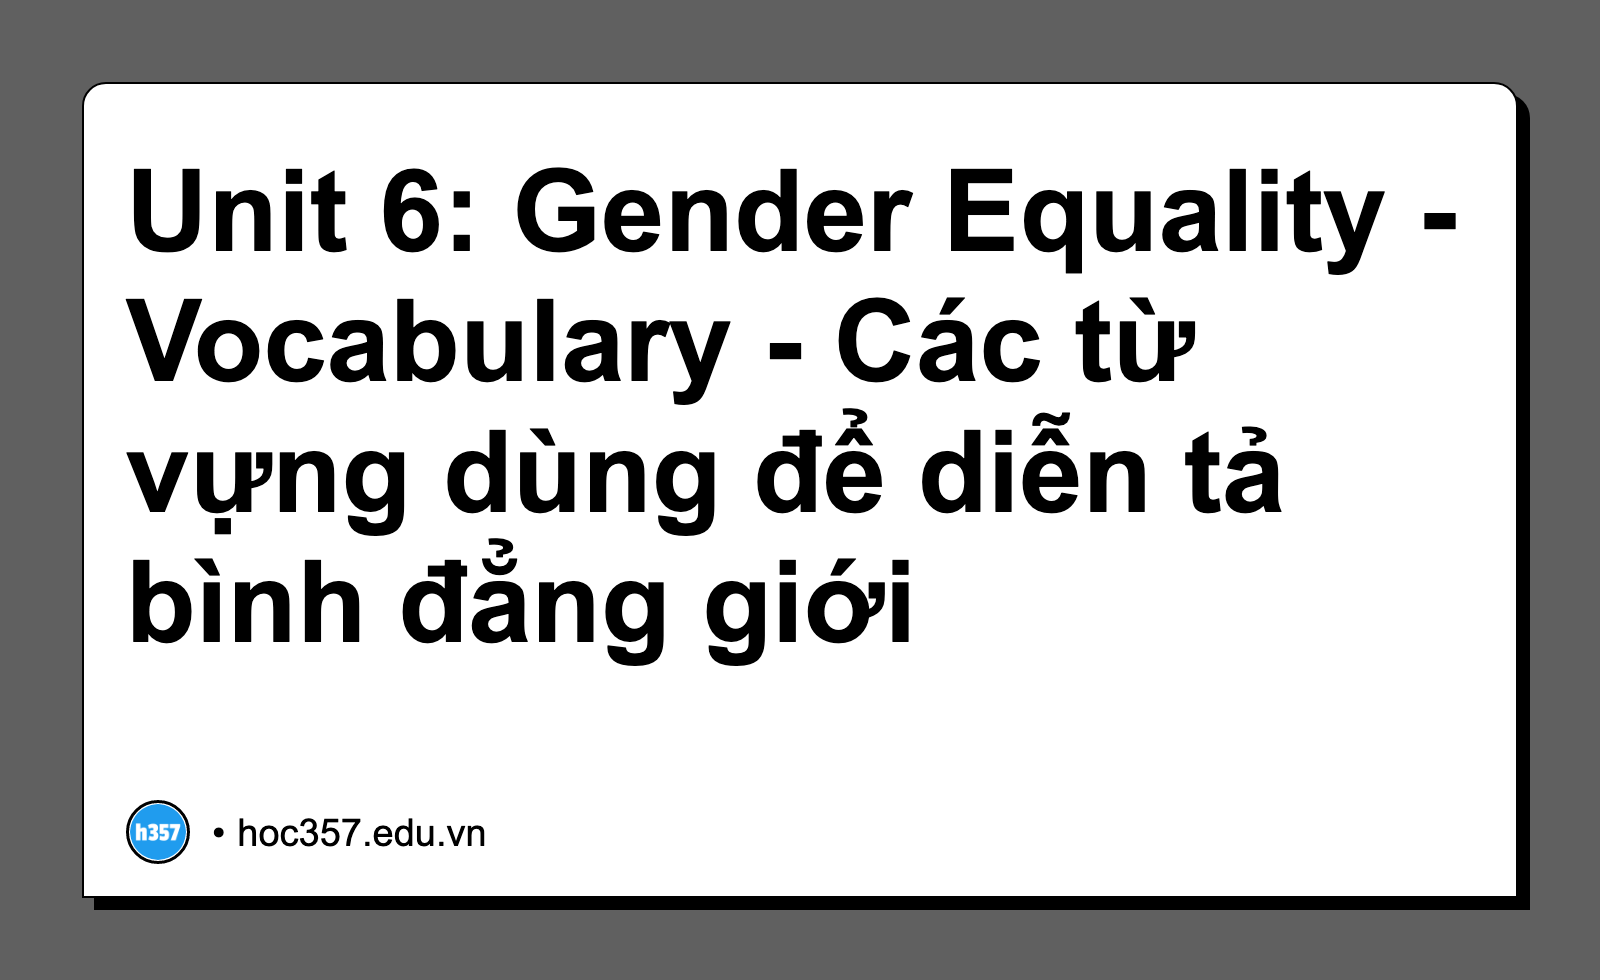 Hình minh họa Unit 6: Gender Equality - Vocabulary - Các từ vựng dùng để diễn tả bình đẳng giới